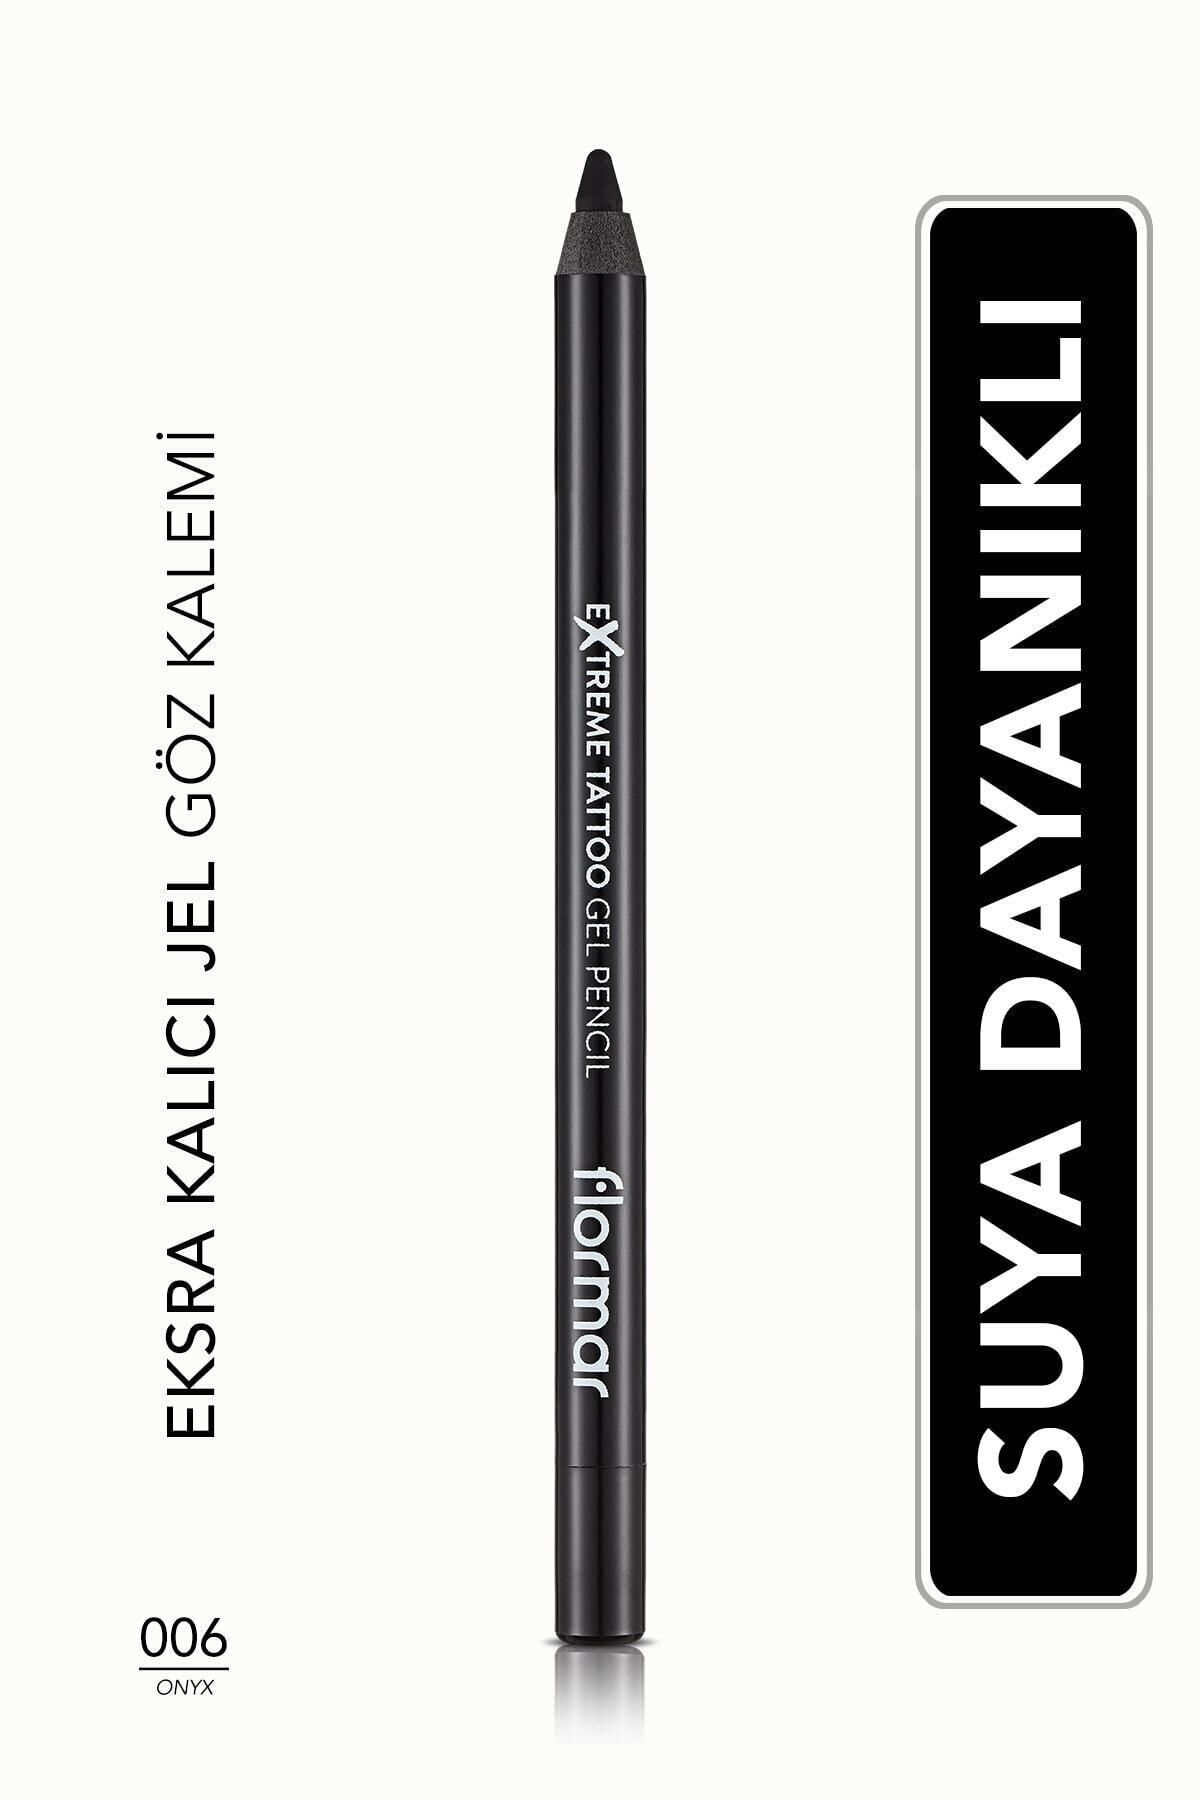 Flormar Waterproof Gel Eye Pencil (BLACK) - Extreme Tattoo Gel Pencil - 006 Onyx -